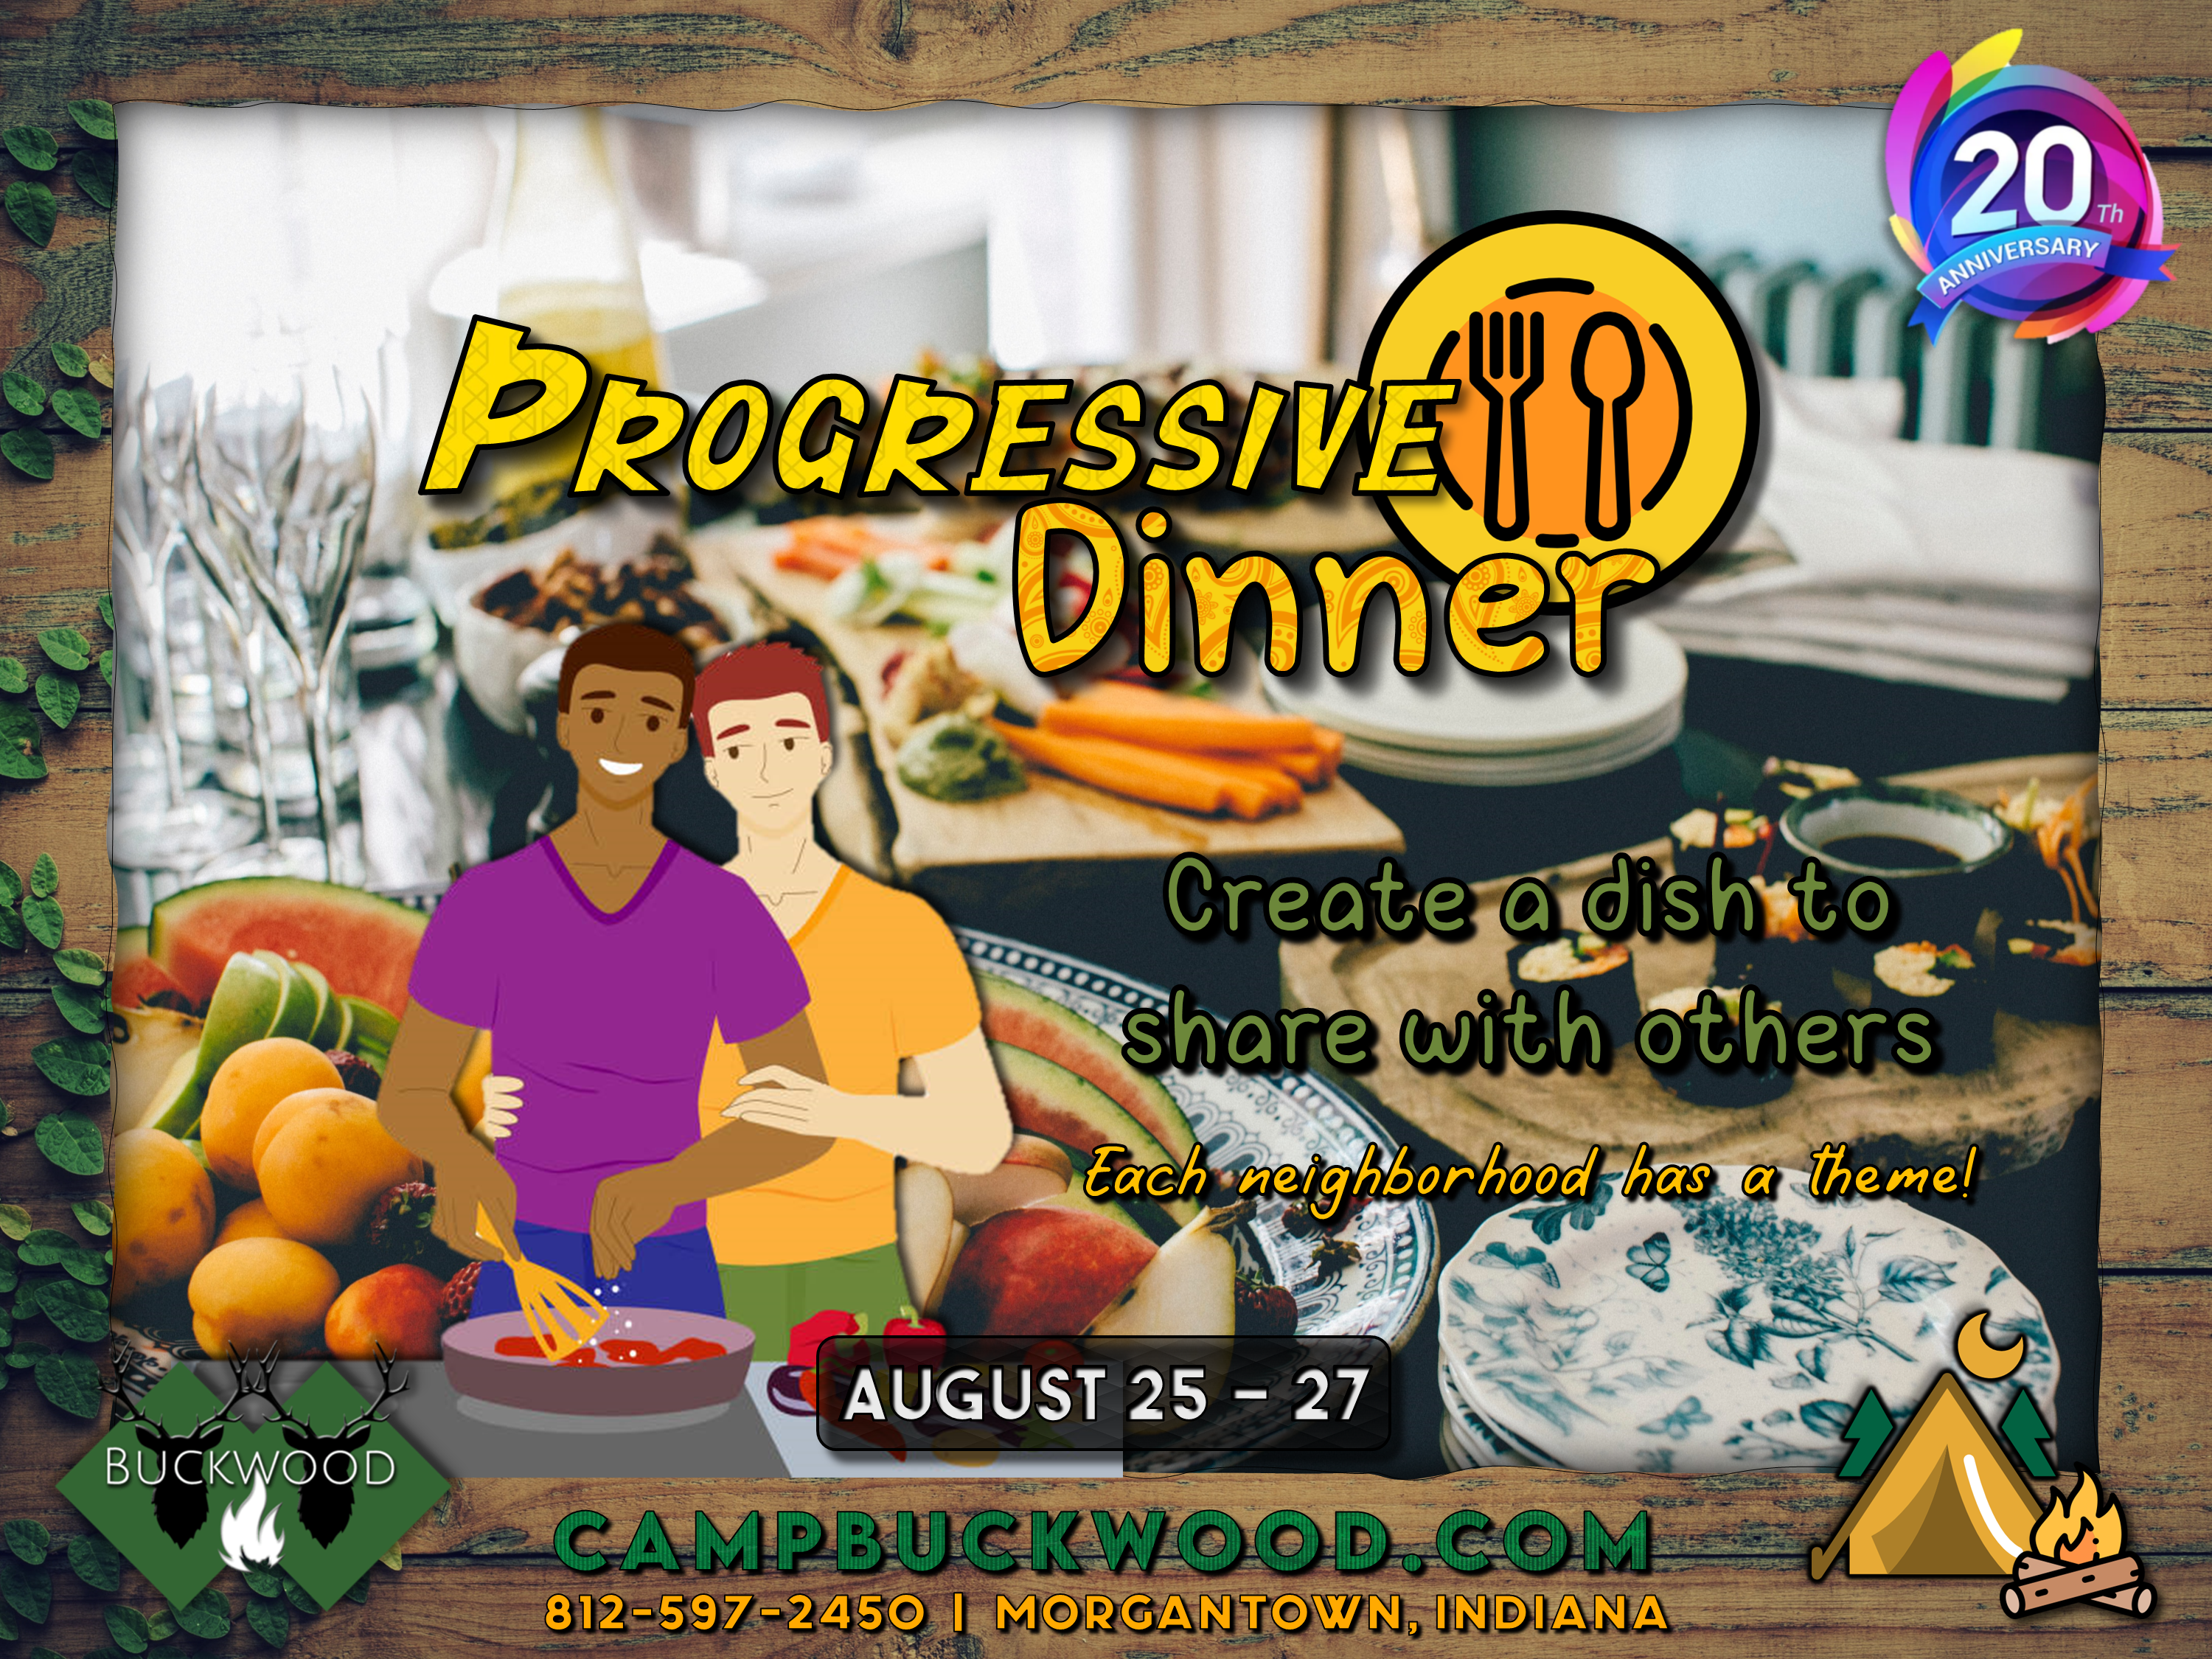 Camp Buckwood 2023 Progressive Dinner Weekend Event